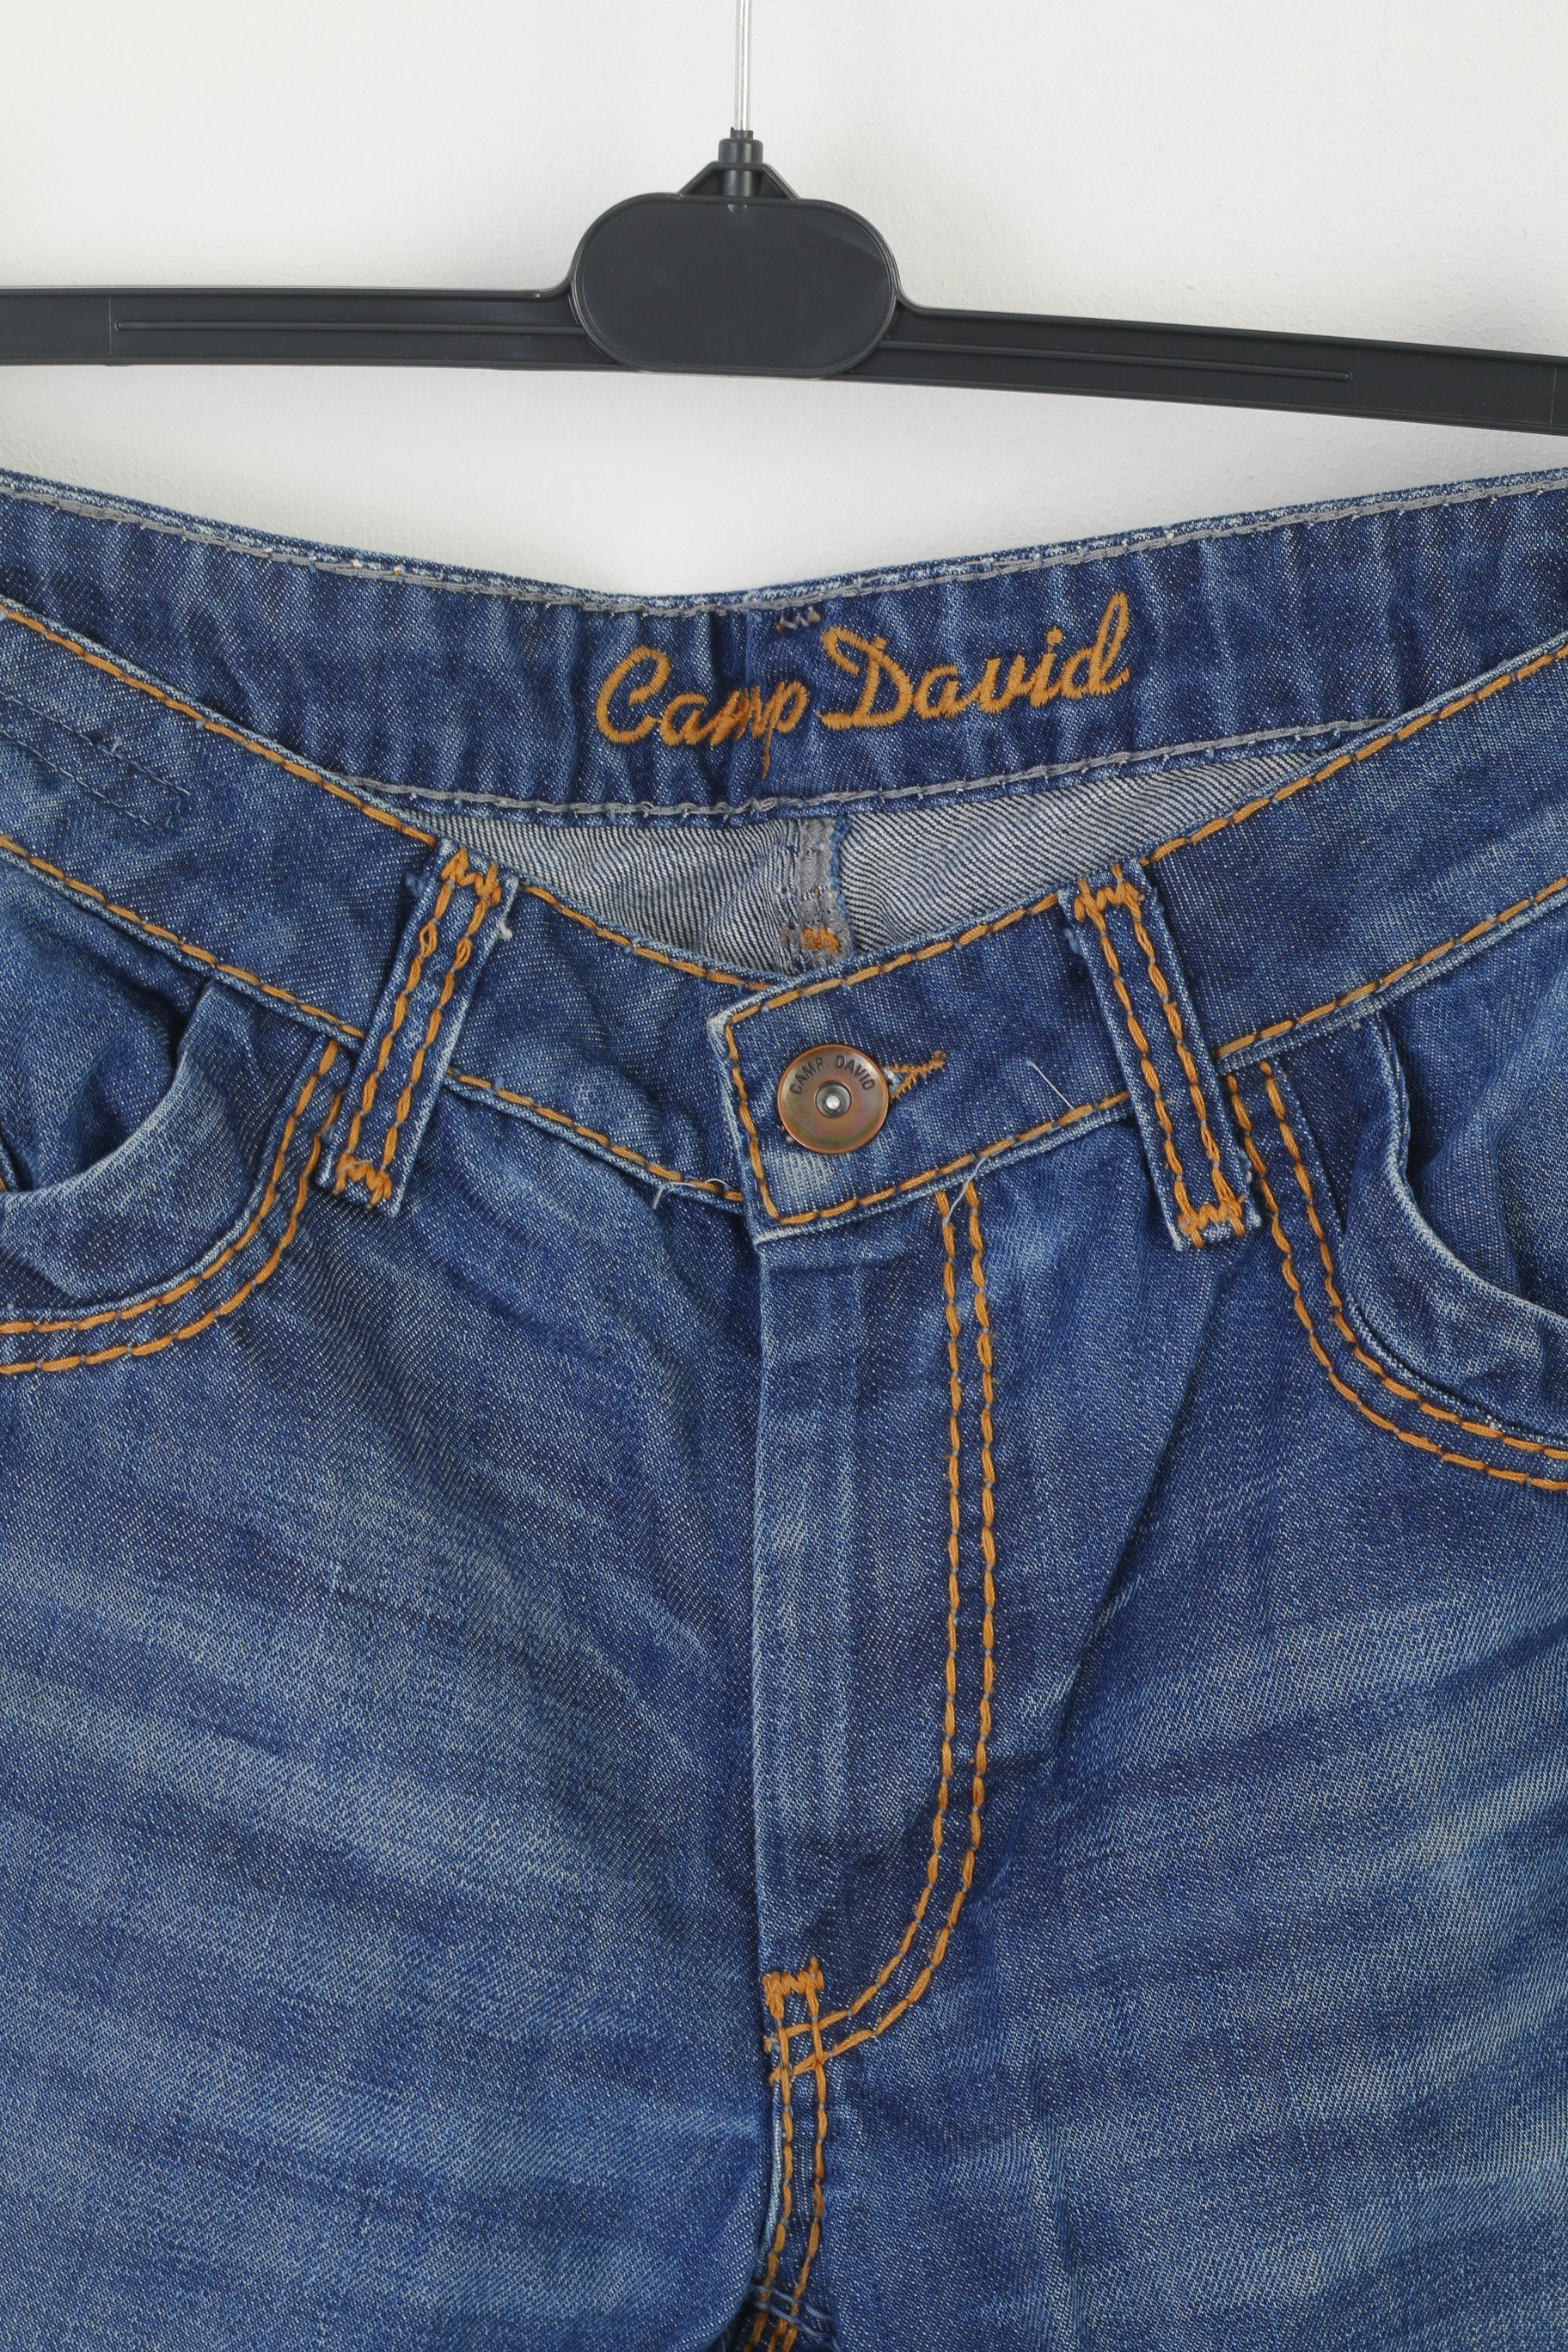 Camp David Men Retrospect Trousers Navy Denim 36 Clothes Leg Long – P Cotton Straight Jeans